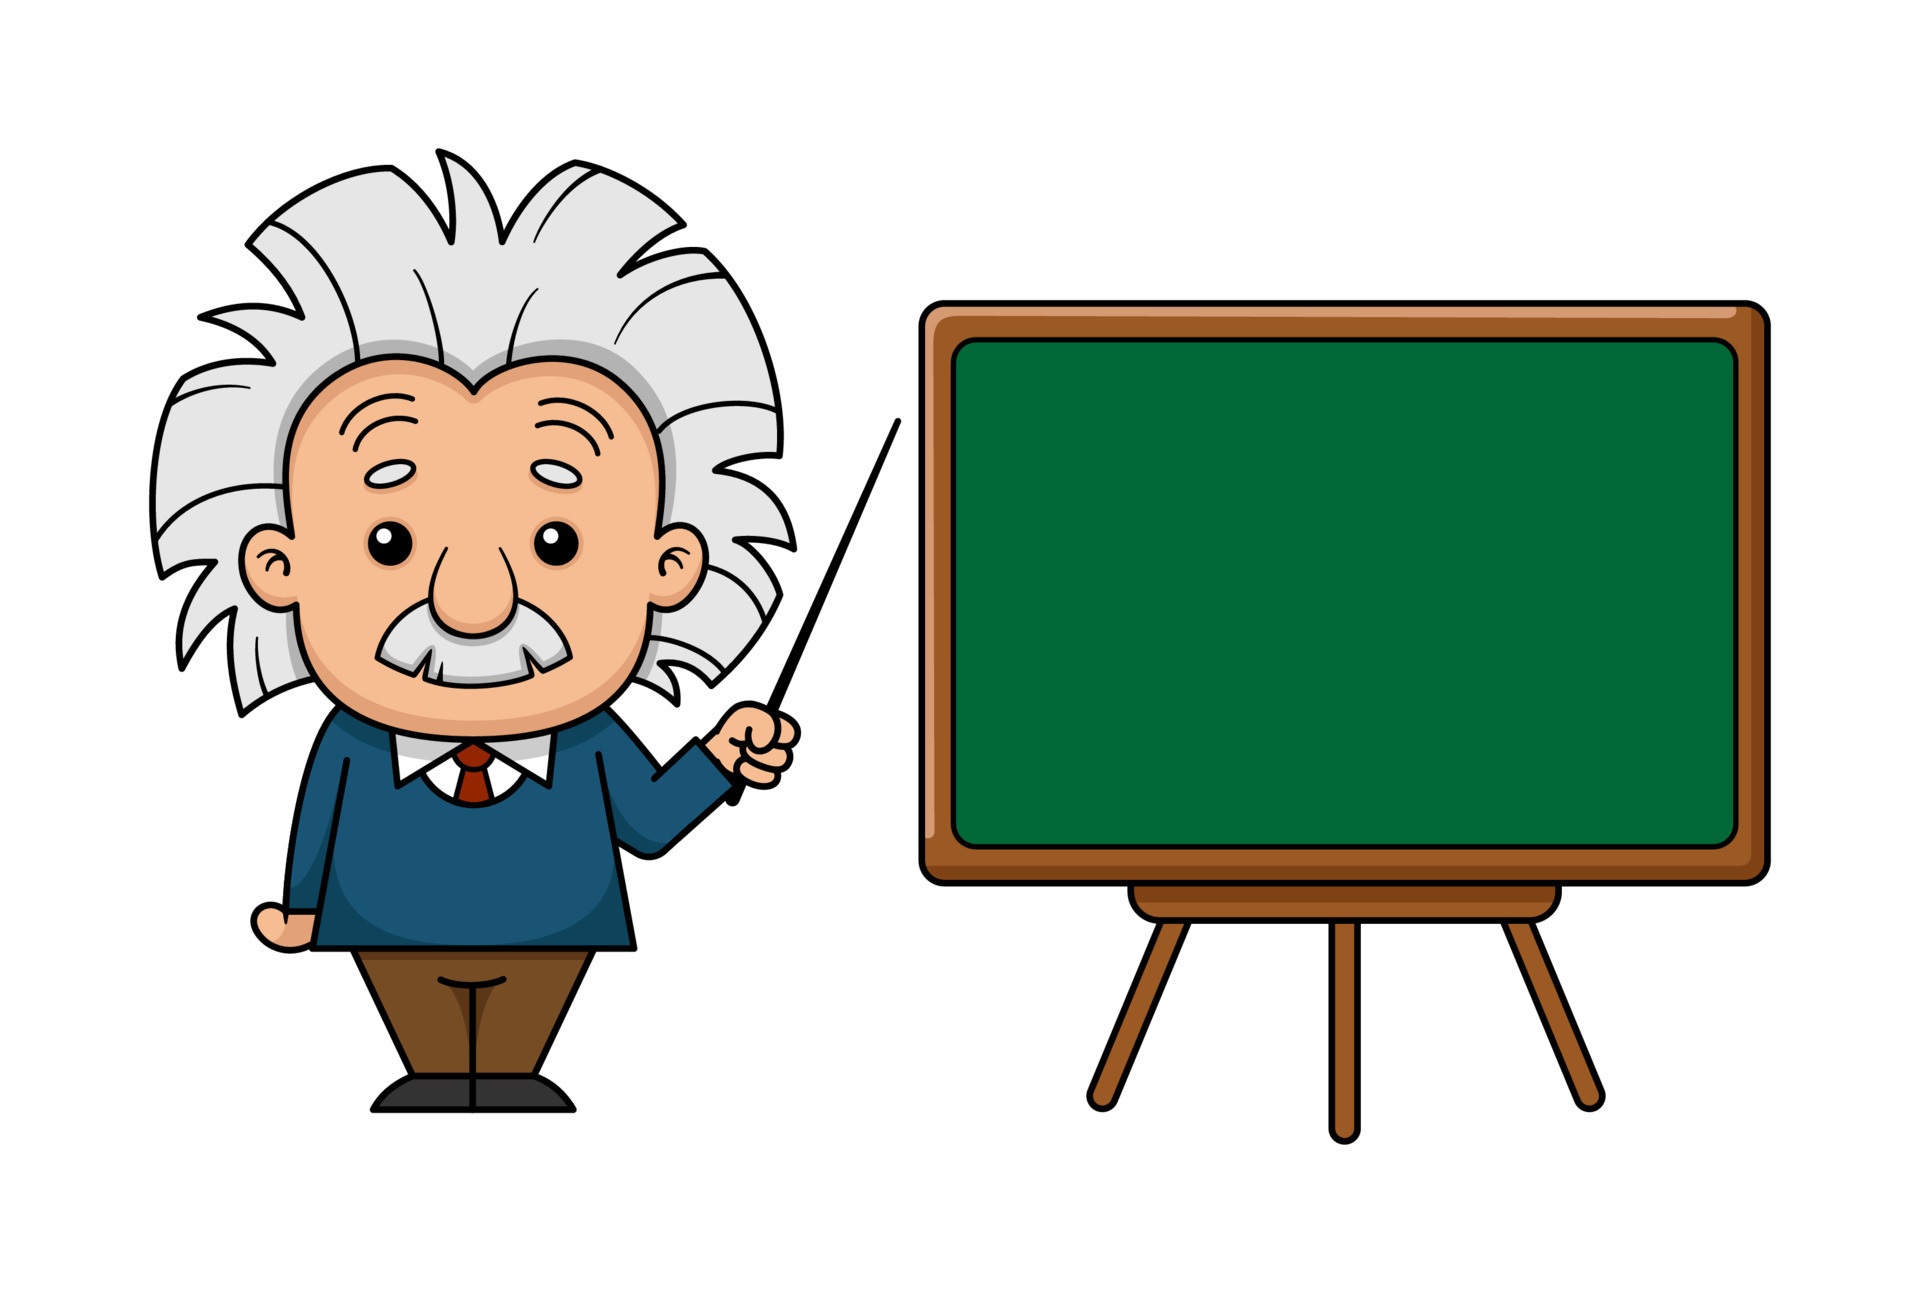 Albert Einstein Cartoon Character With Board 7642085 Vector Art at Vecteezy